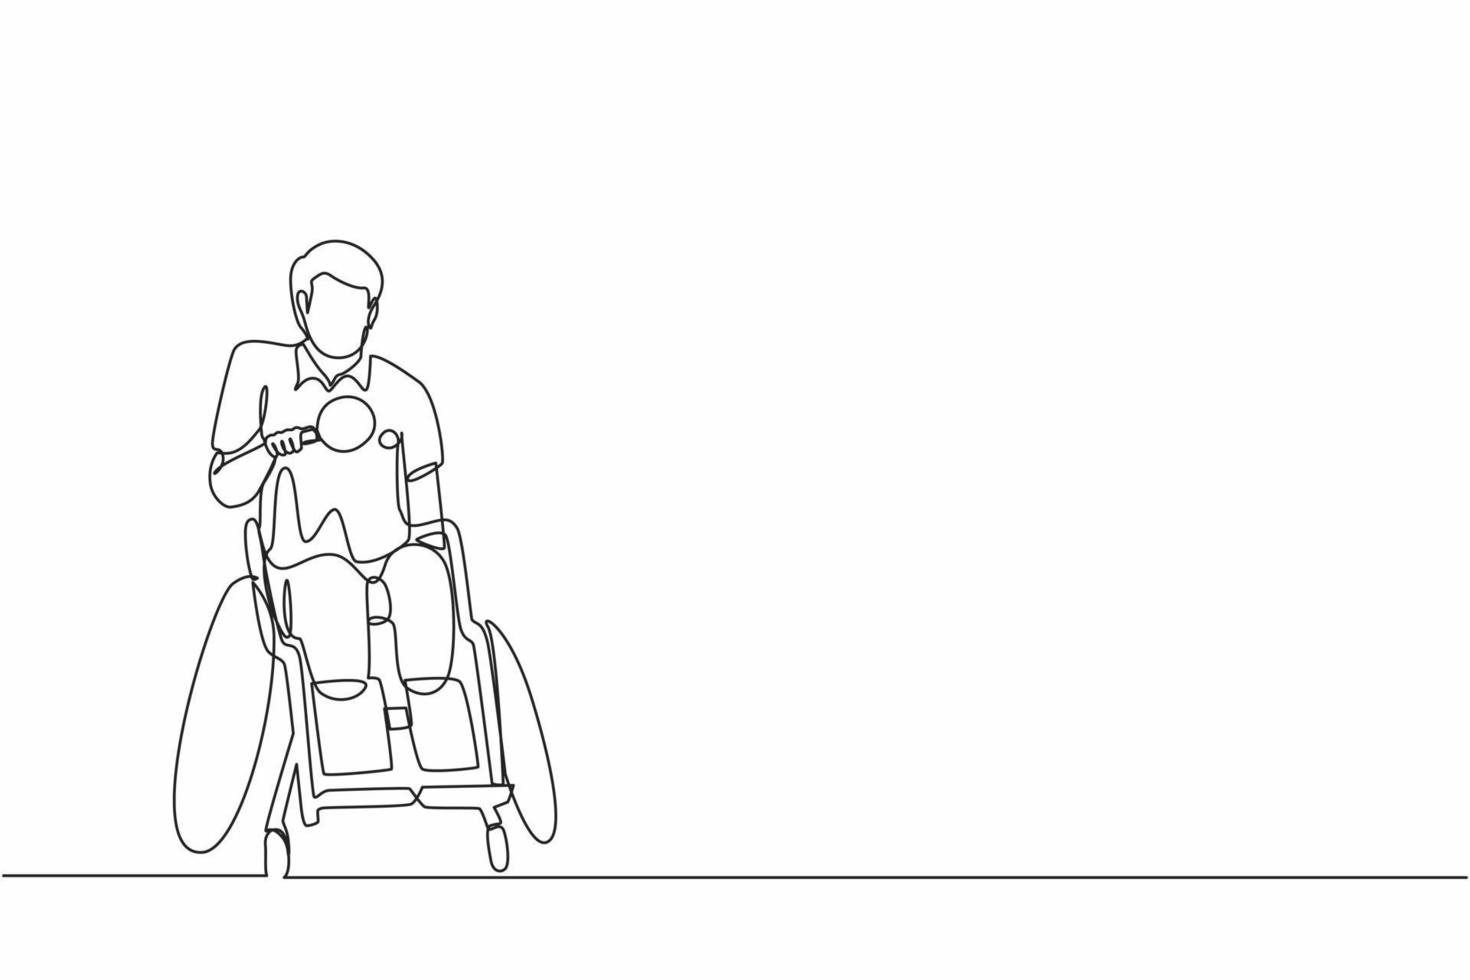 enda en rad ritning handikappad idrottsman i rullstol som spelar bordtennis. spel mästerskap. hobbyer, intressen för personer med funktionsnedsättning. kontinuerlig linje rita design grafisk vektor